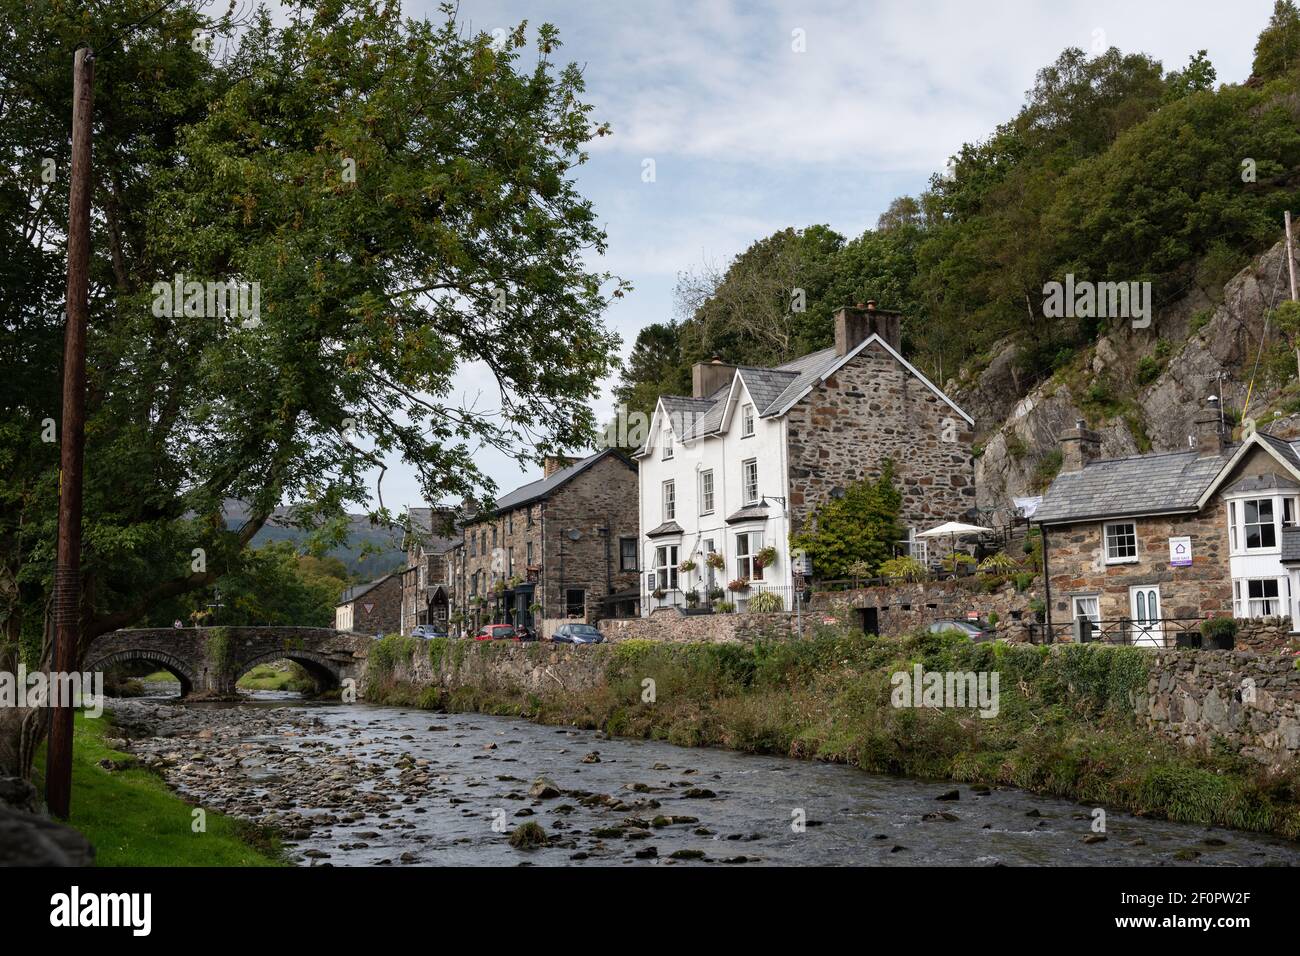 Le village de Beddgelert est situé dans le parc national de Snowdonia Pays de Galles du Nord Banque D'Images